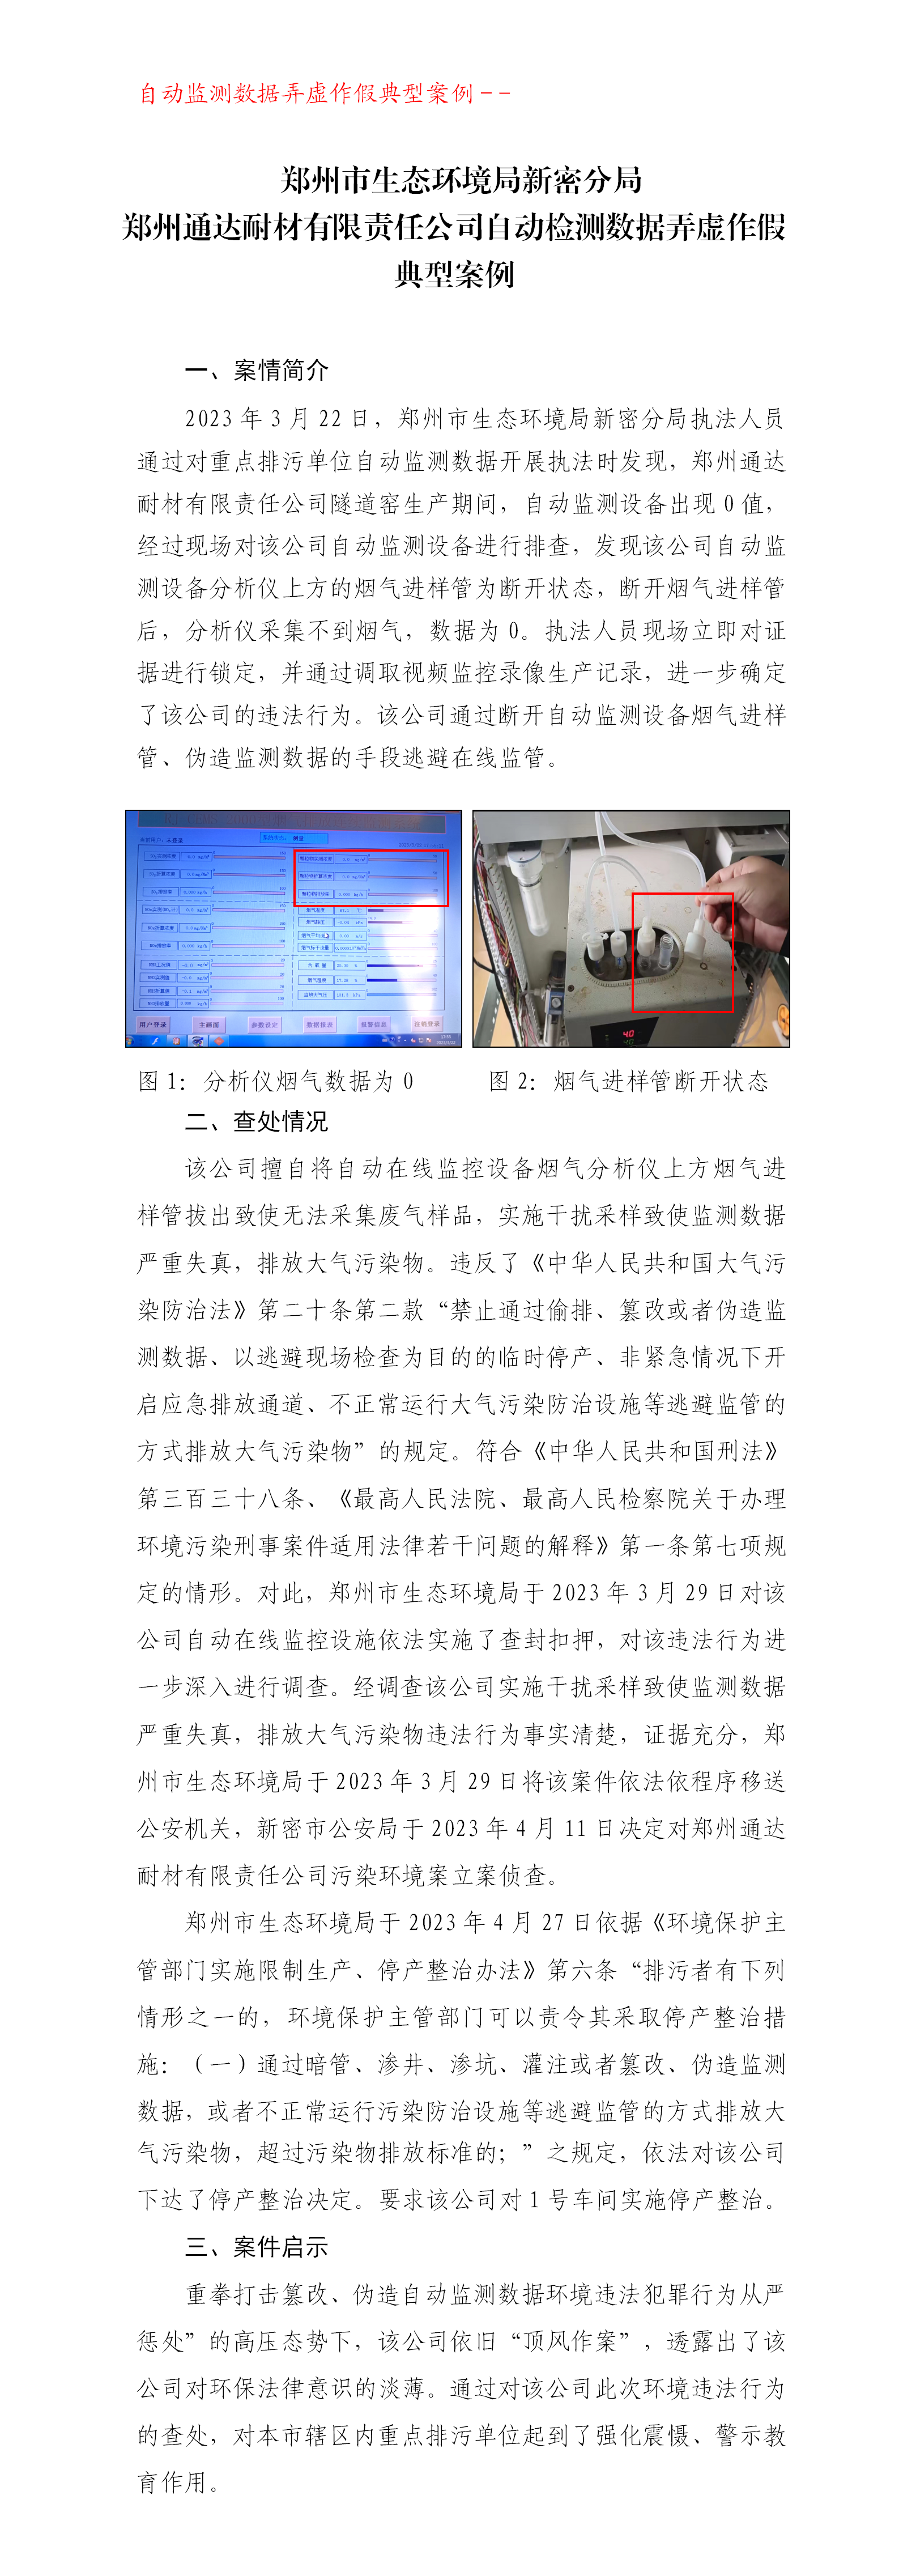 （典型案例）郑州通达耐材有限责任公司自动检测数据弄虚作假案(1)(1)(3)_01.png